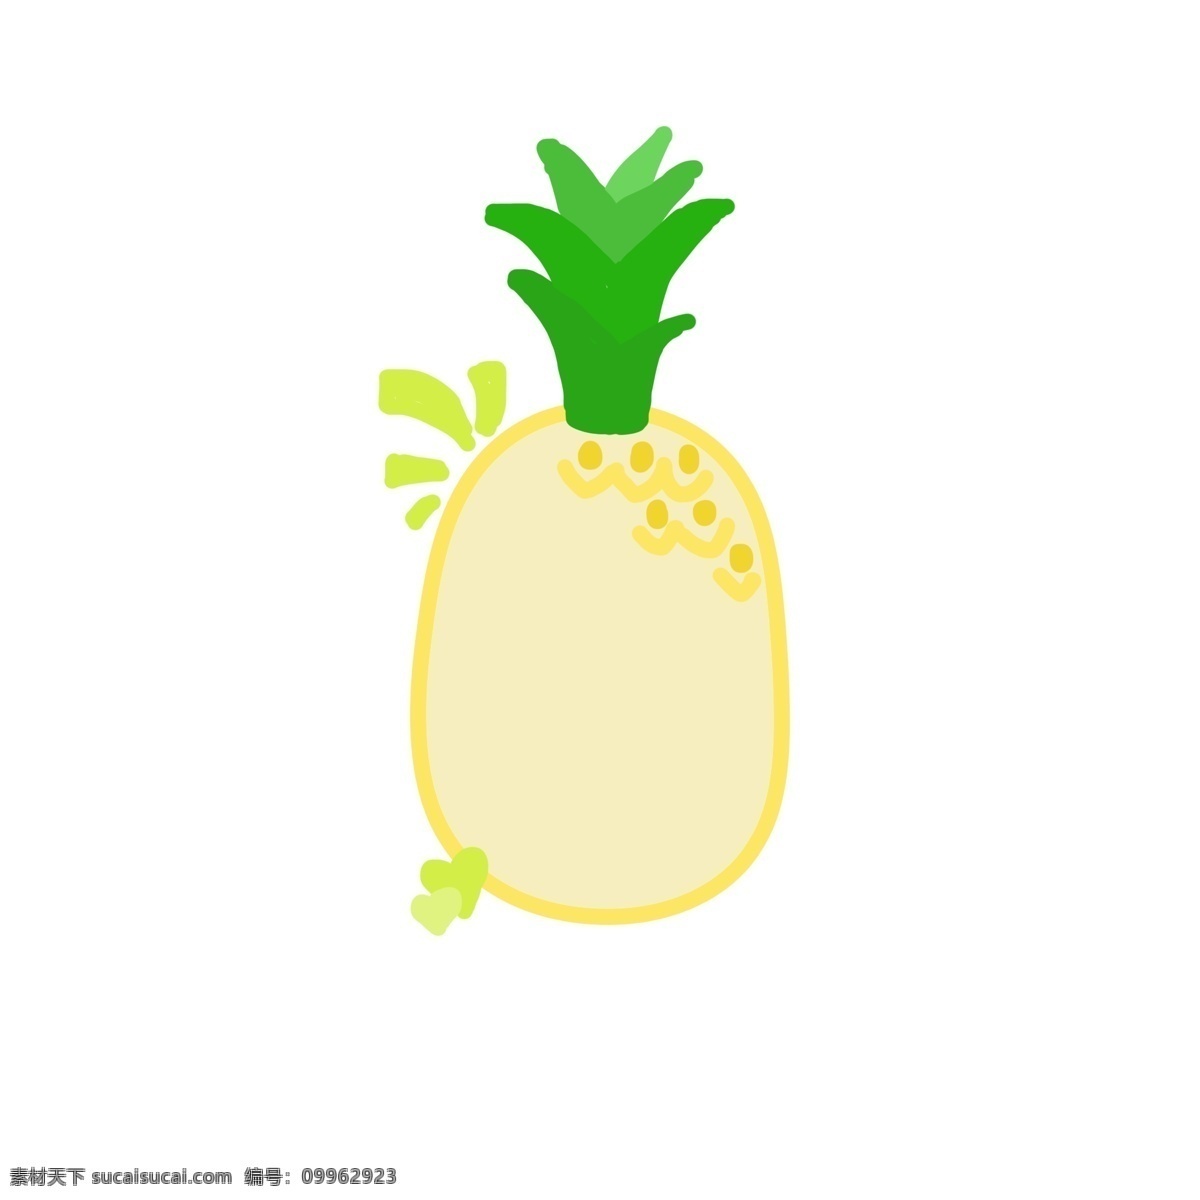 手绘 卡通 菠萝 水果 对话框 边框 商用 元素 元素图标